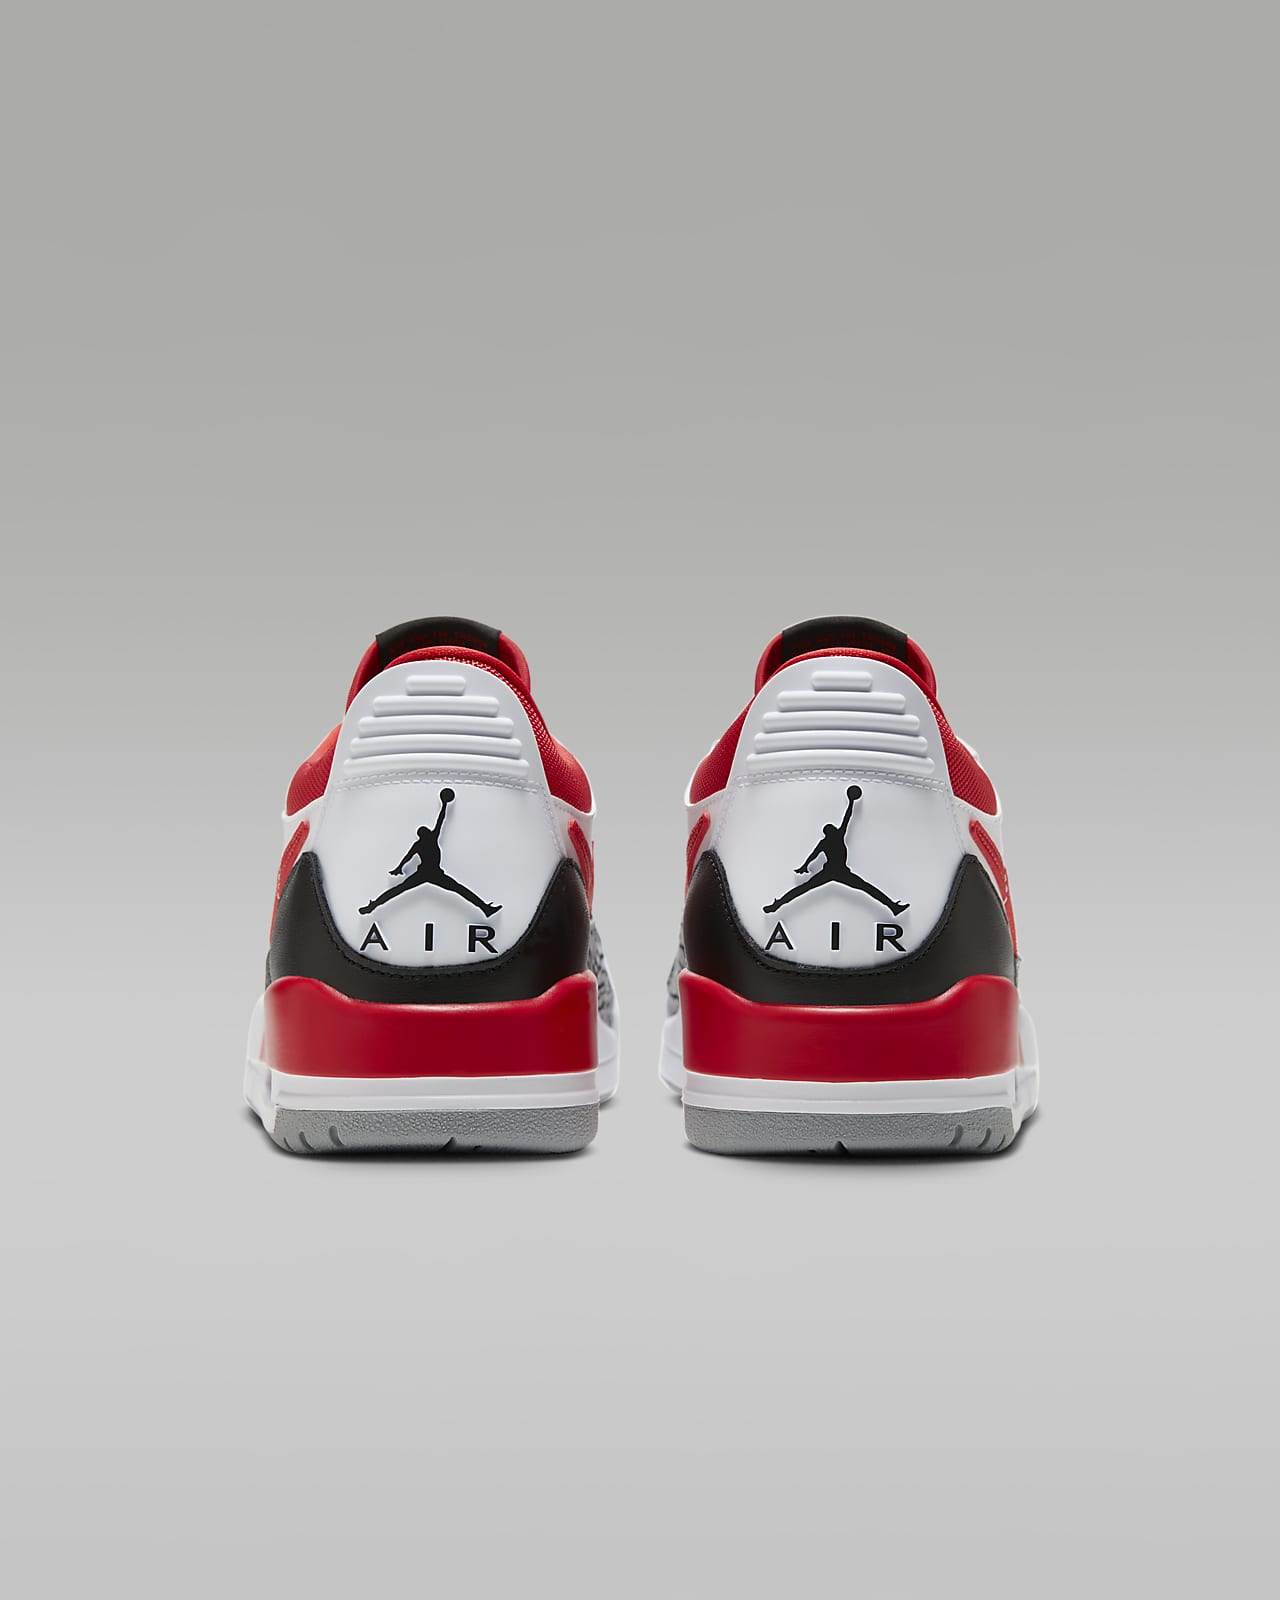 Louis Vuitton Paris Supreme Red Black Air Jordan 13 Shoes - LIMITED EDITION